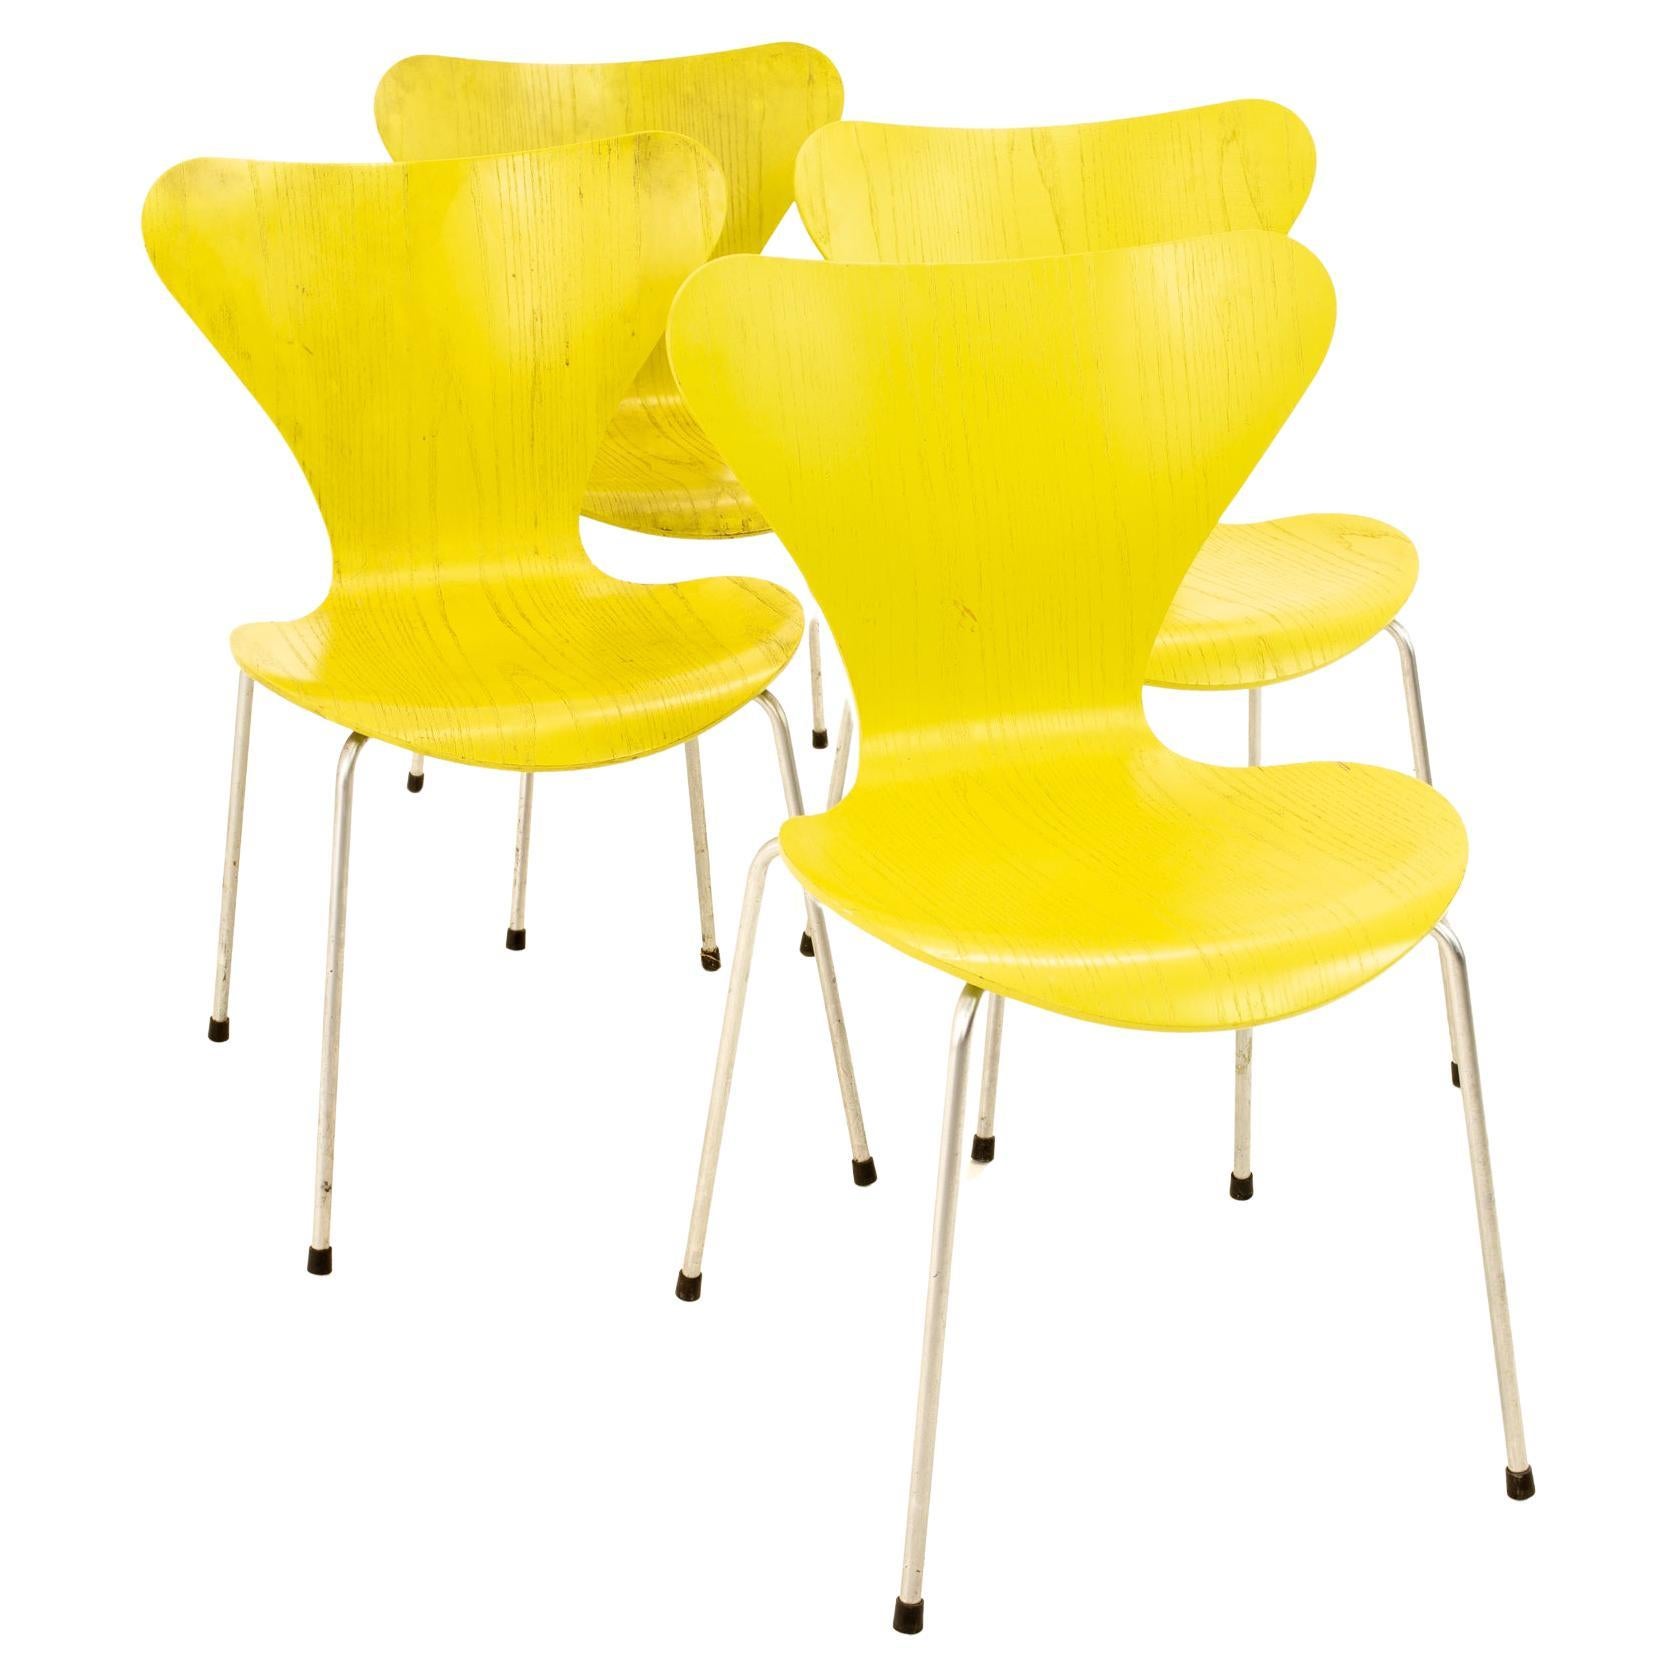 Chaise série 7 Arne Jacobsen pour Fritz Hansen de style moderne du milieu du siècle dernier -Lime -Set of 4